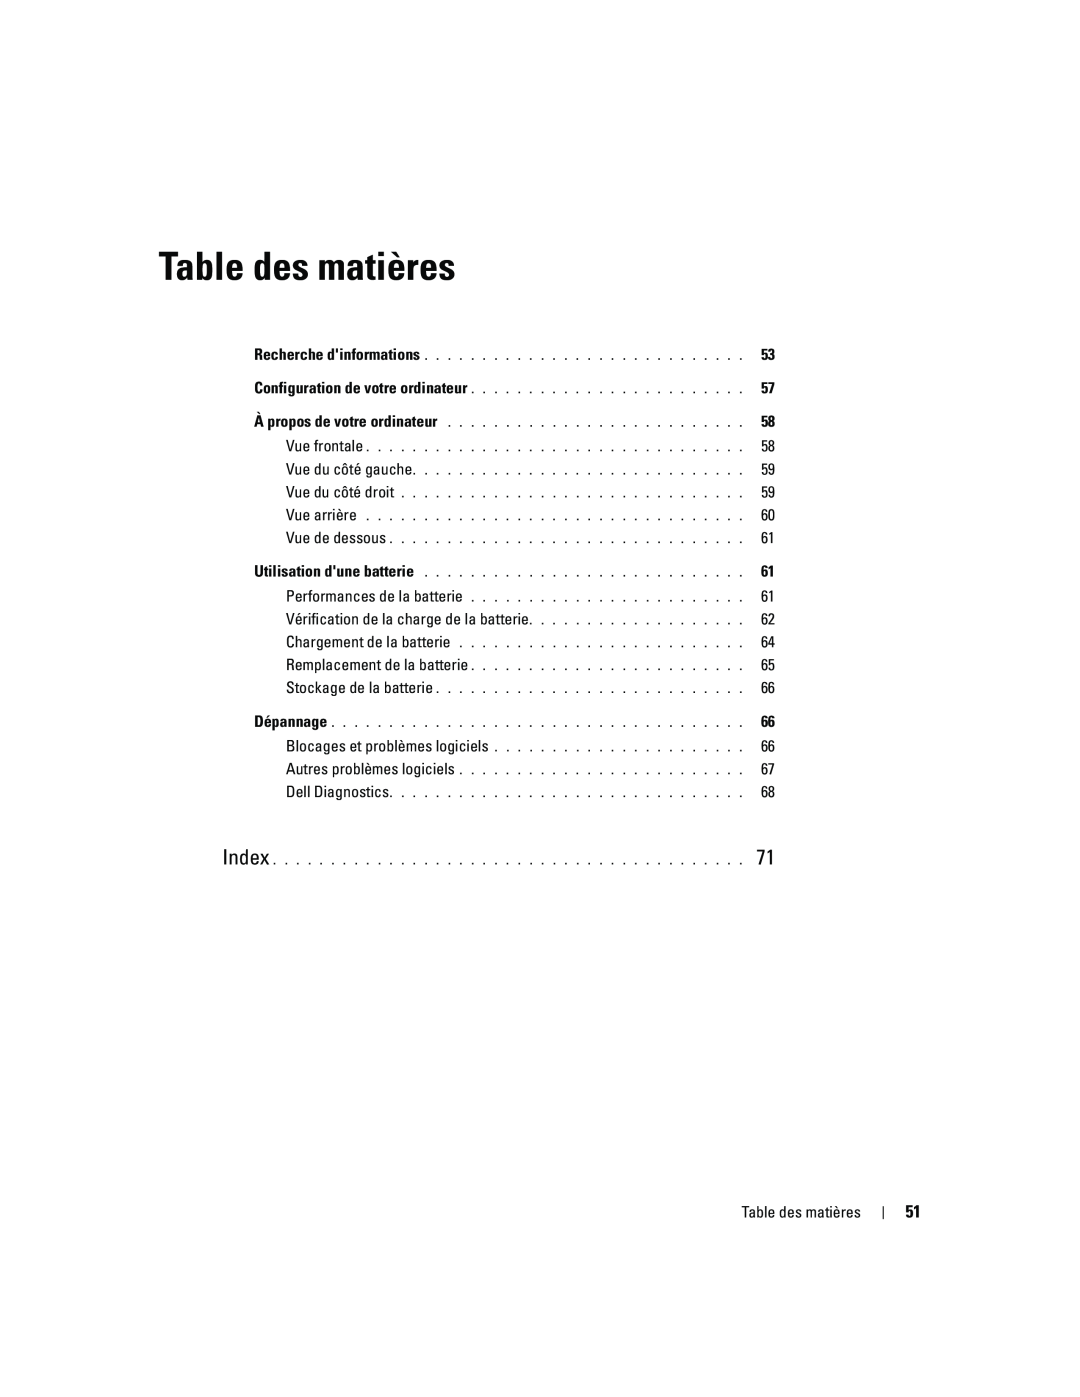 Dell ATG D620 manual Table des matières, Vérification de la charge de la batterie 